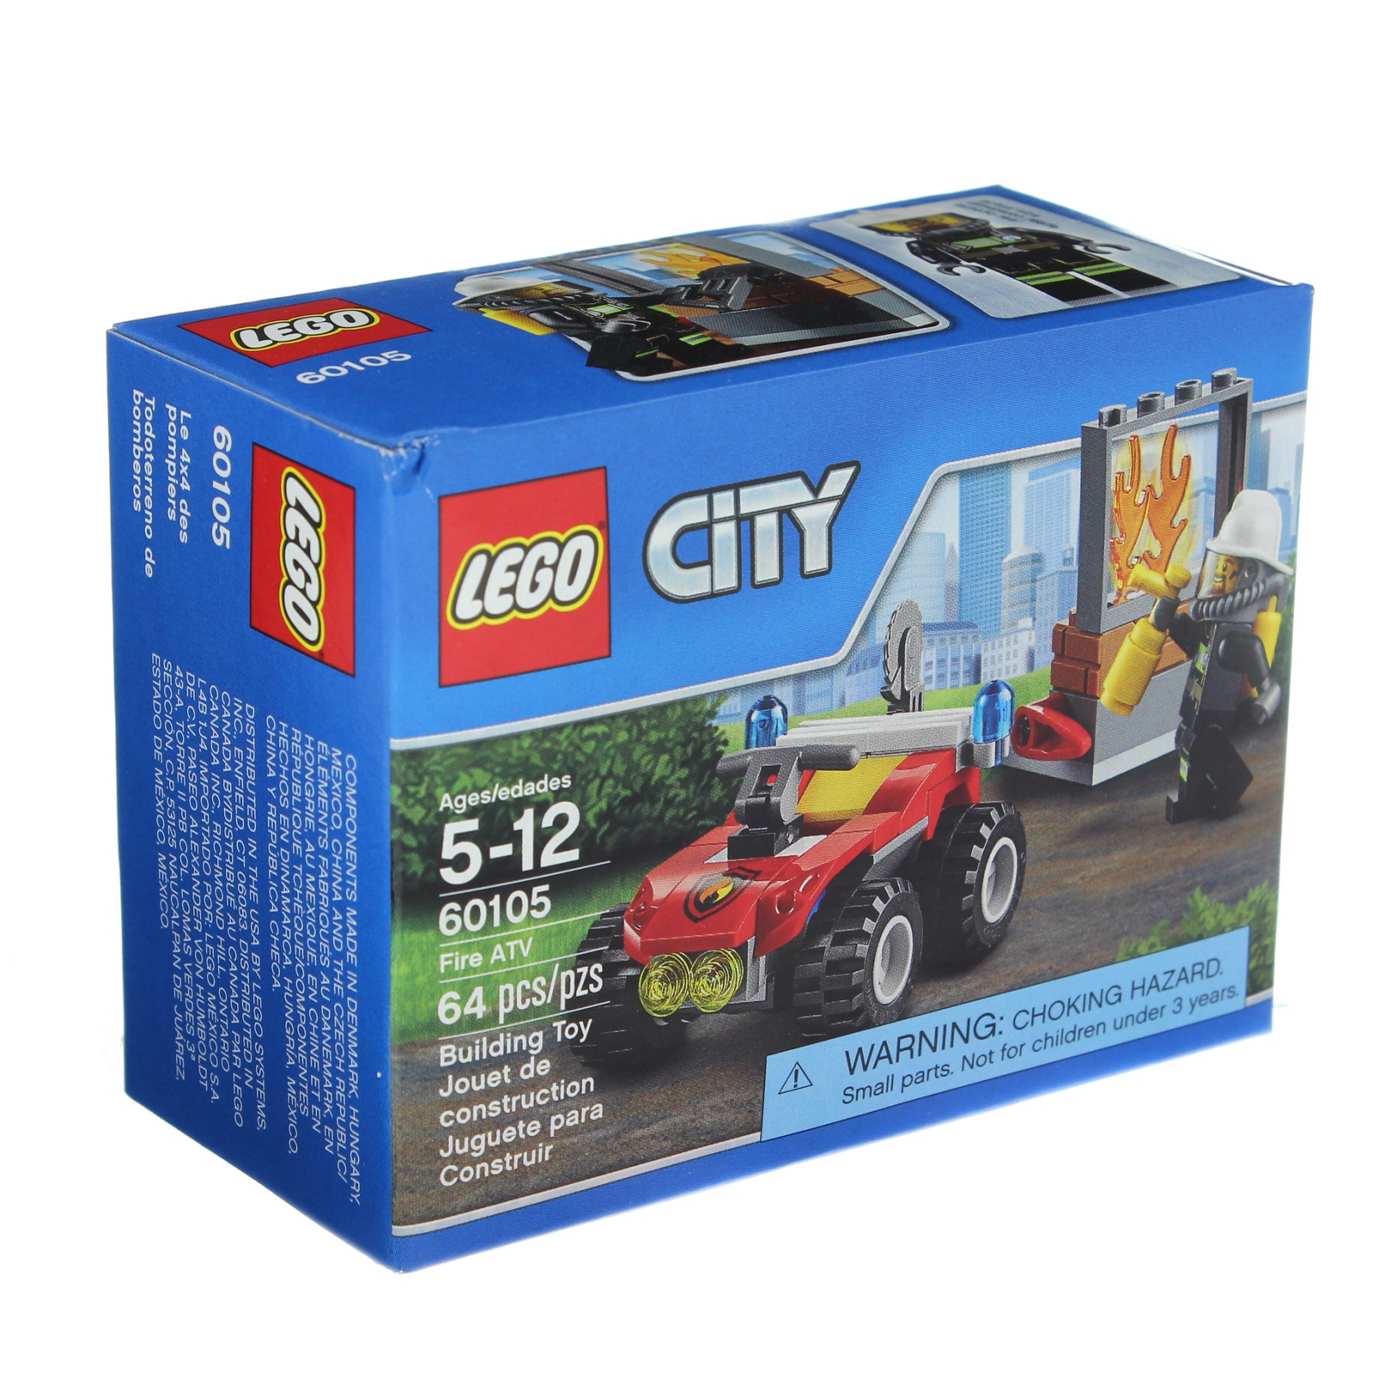 LEGO City Fire ATV; image 2 of 2